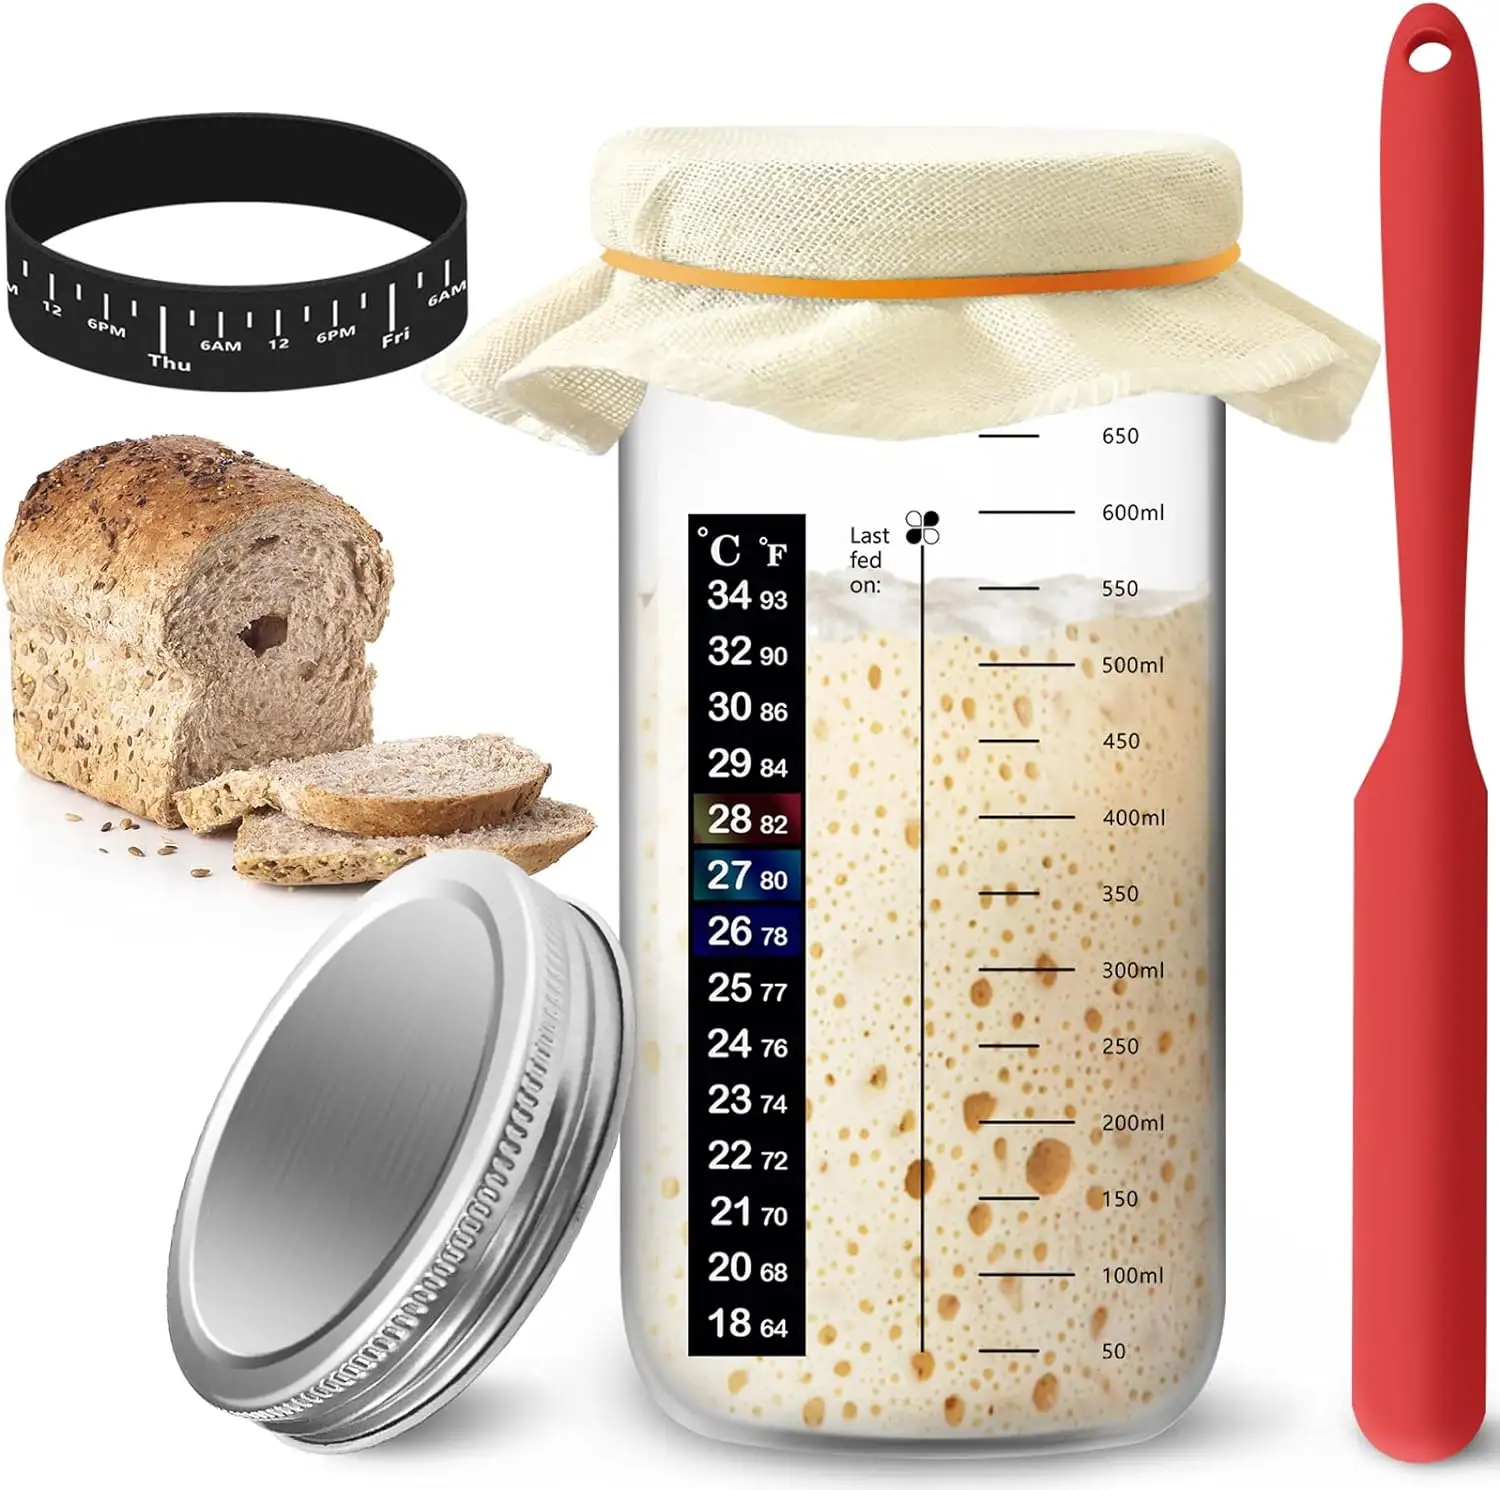 24ออนซ์ sourdough Starter Jar ภาชนะปากกว้างอุปกรณ์อบขนมปัง sourdough ชุดเริ่มต้นใช้งาน DIY